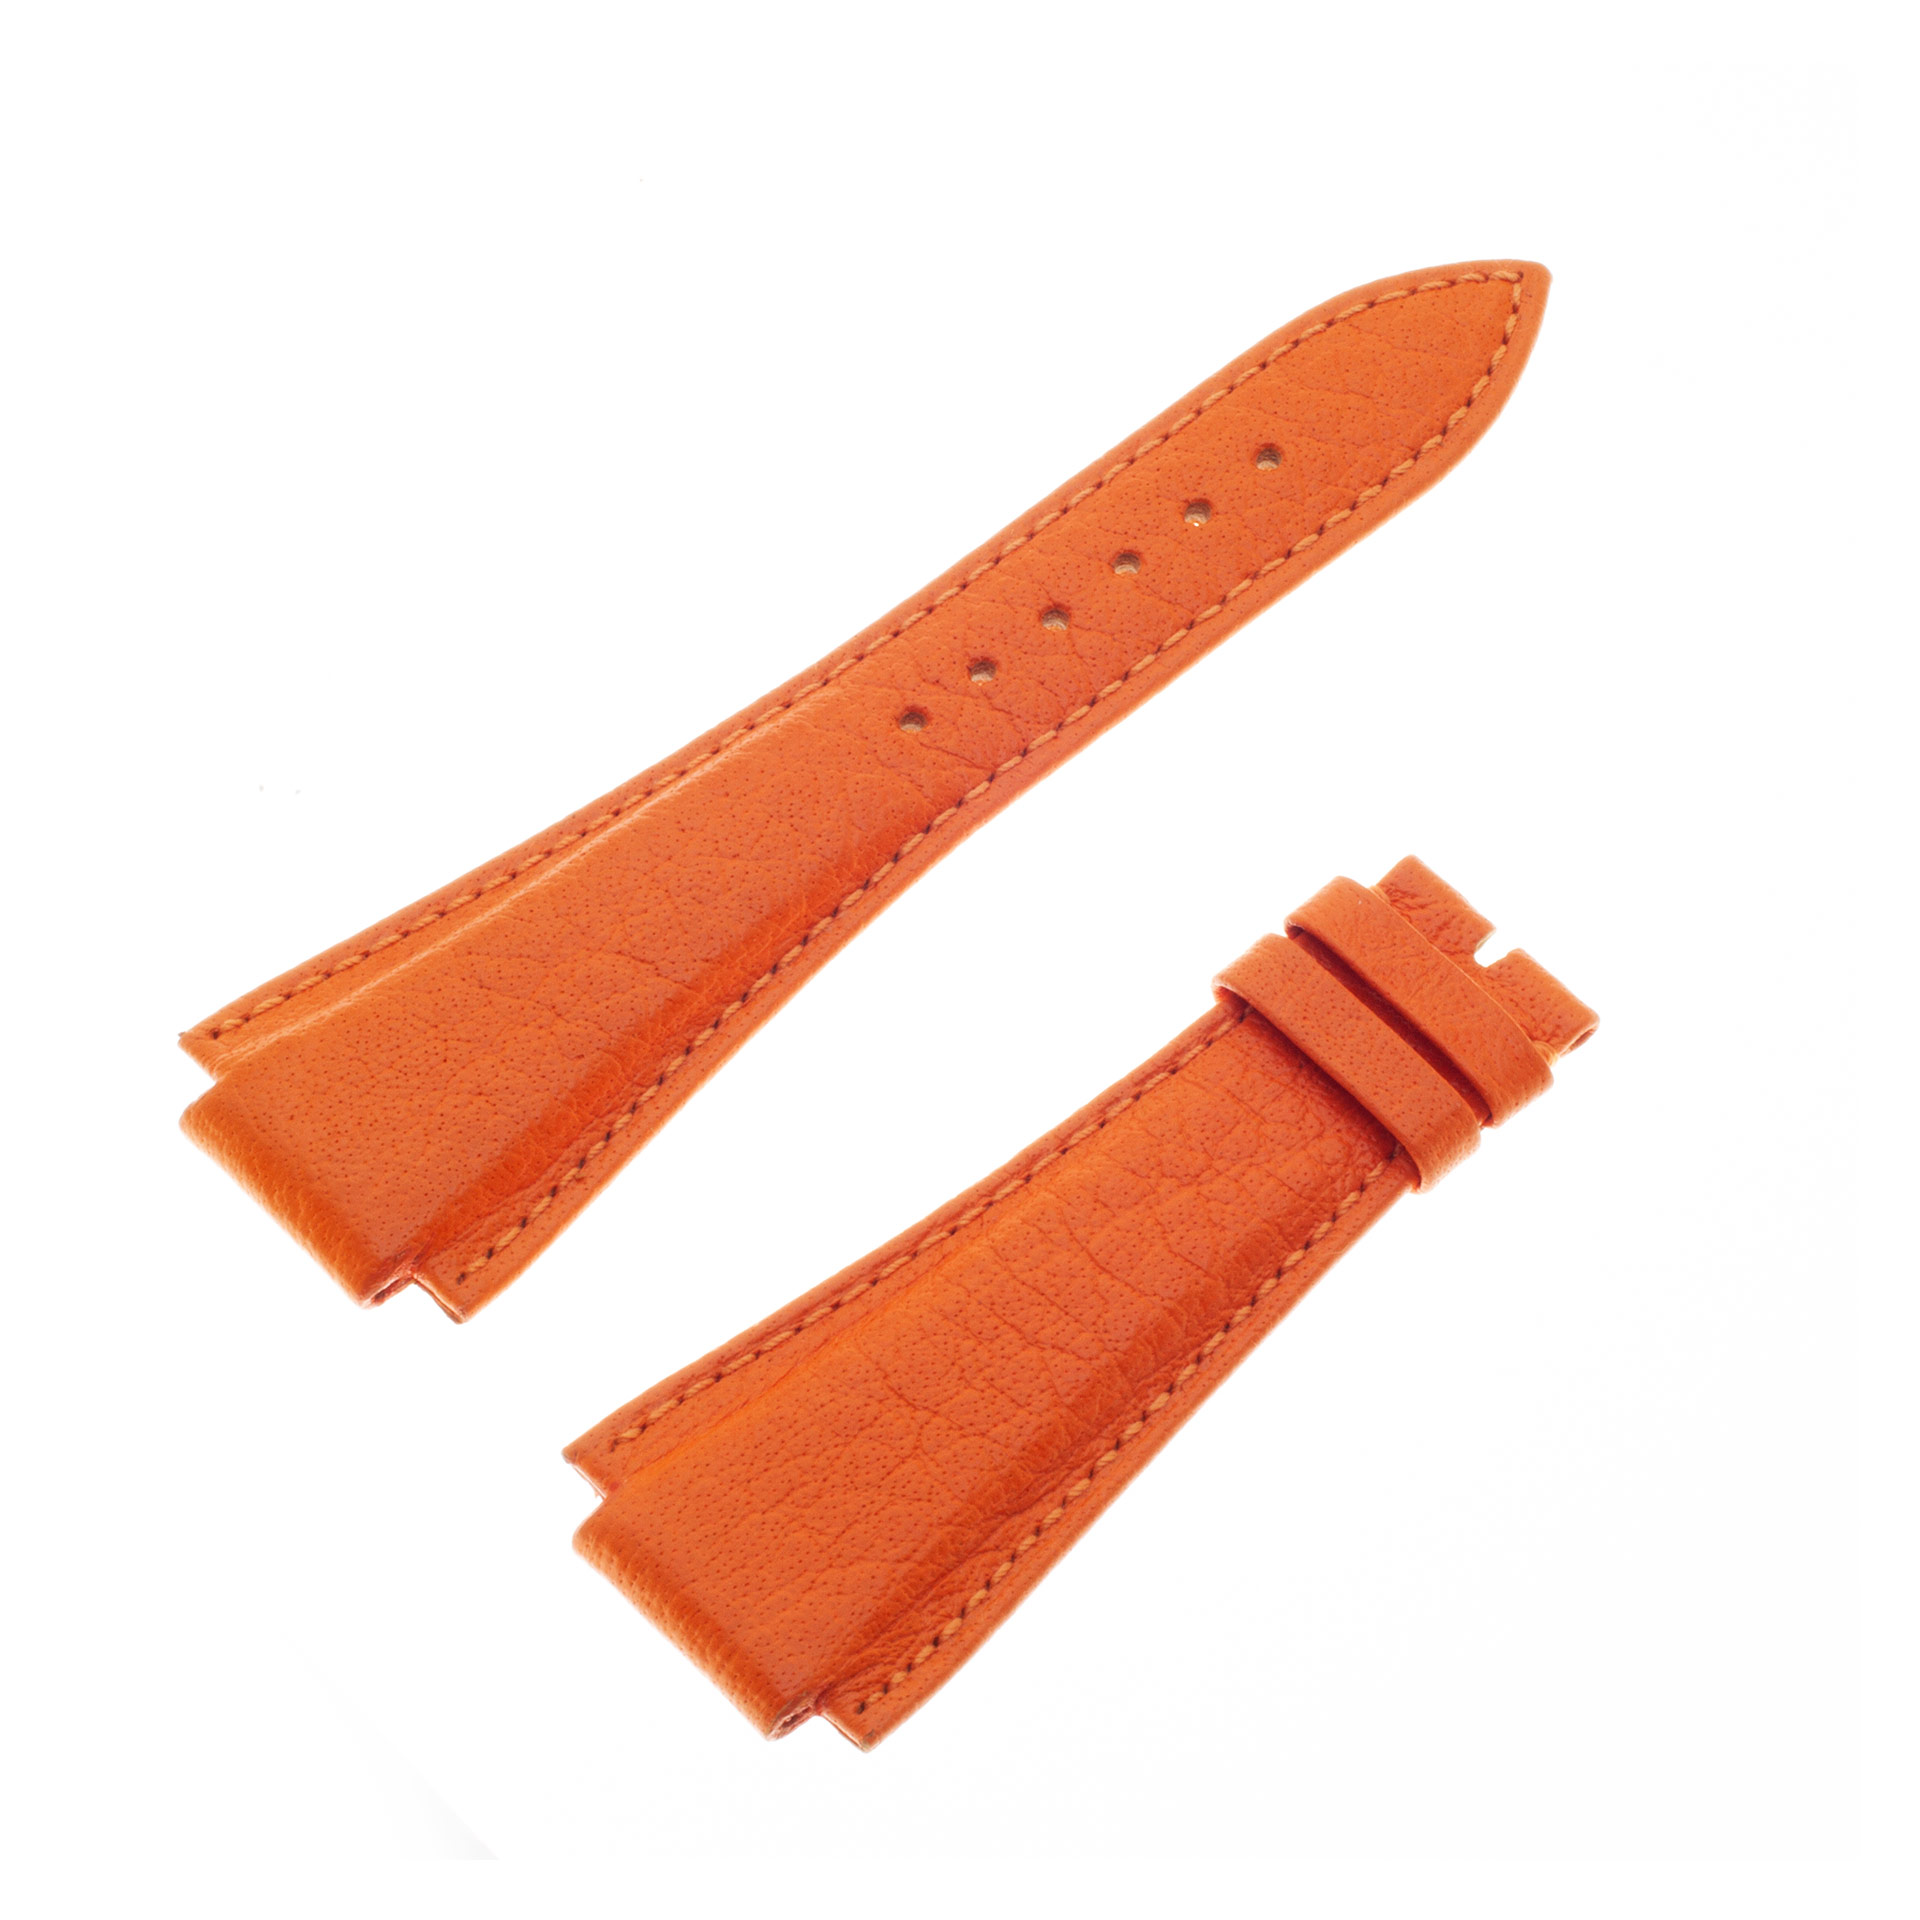 Audemars Piguet Royal Oak orange calf leather strap 19mm x 17mm